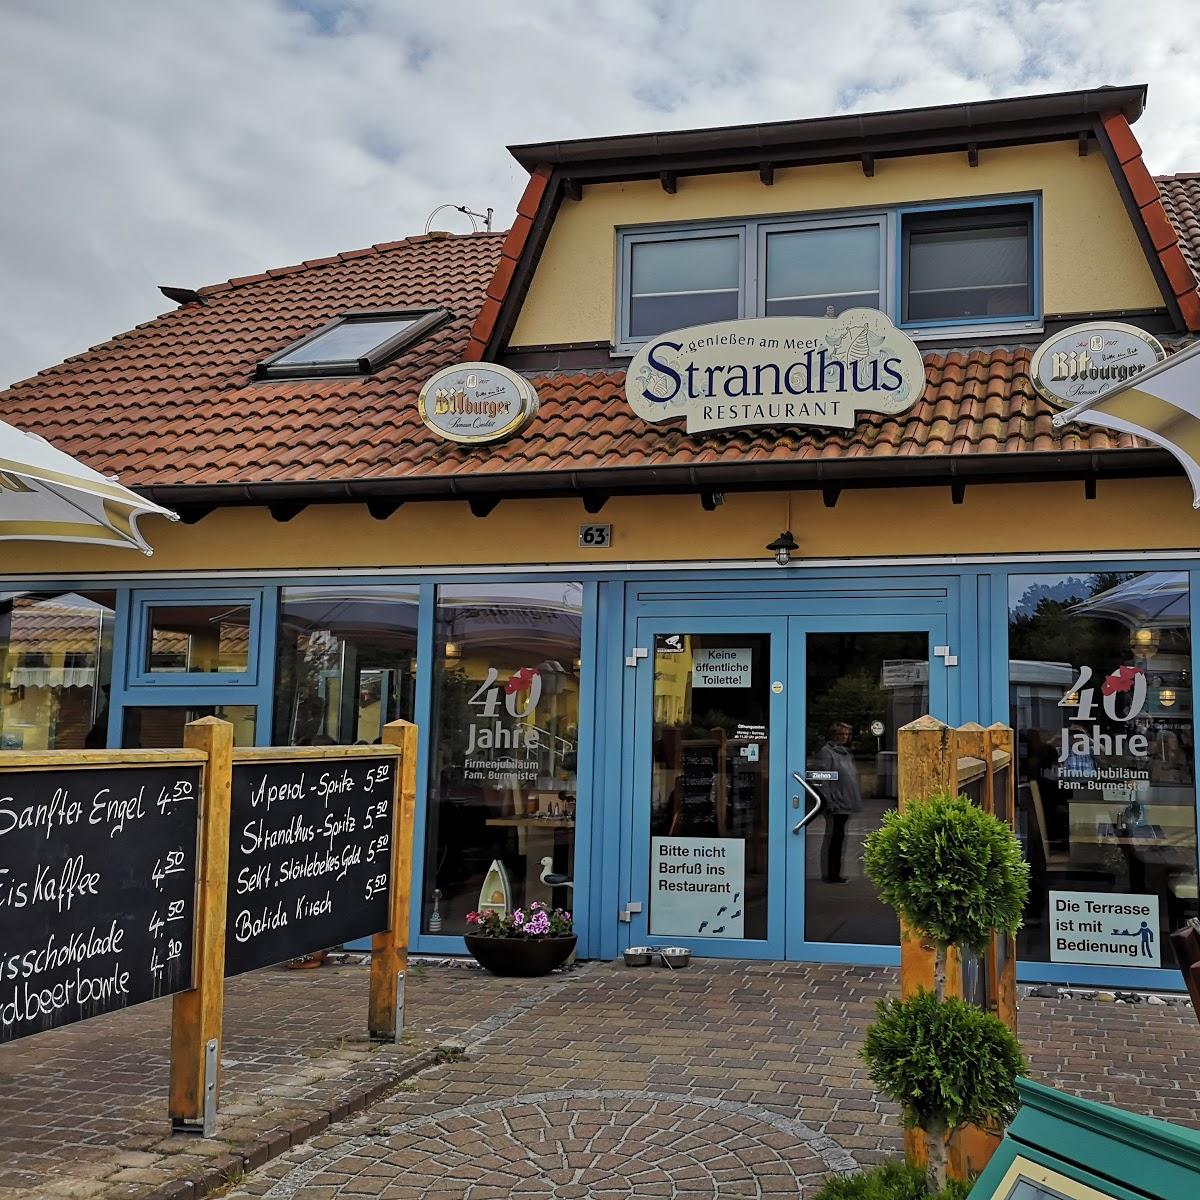 Restaurant "Strandhus" in Graal-Müritz